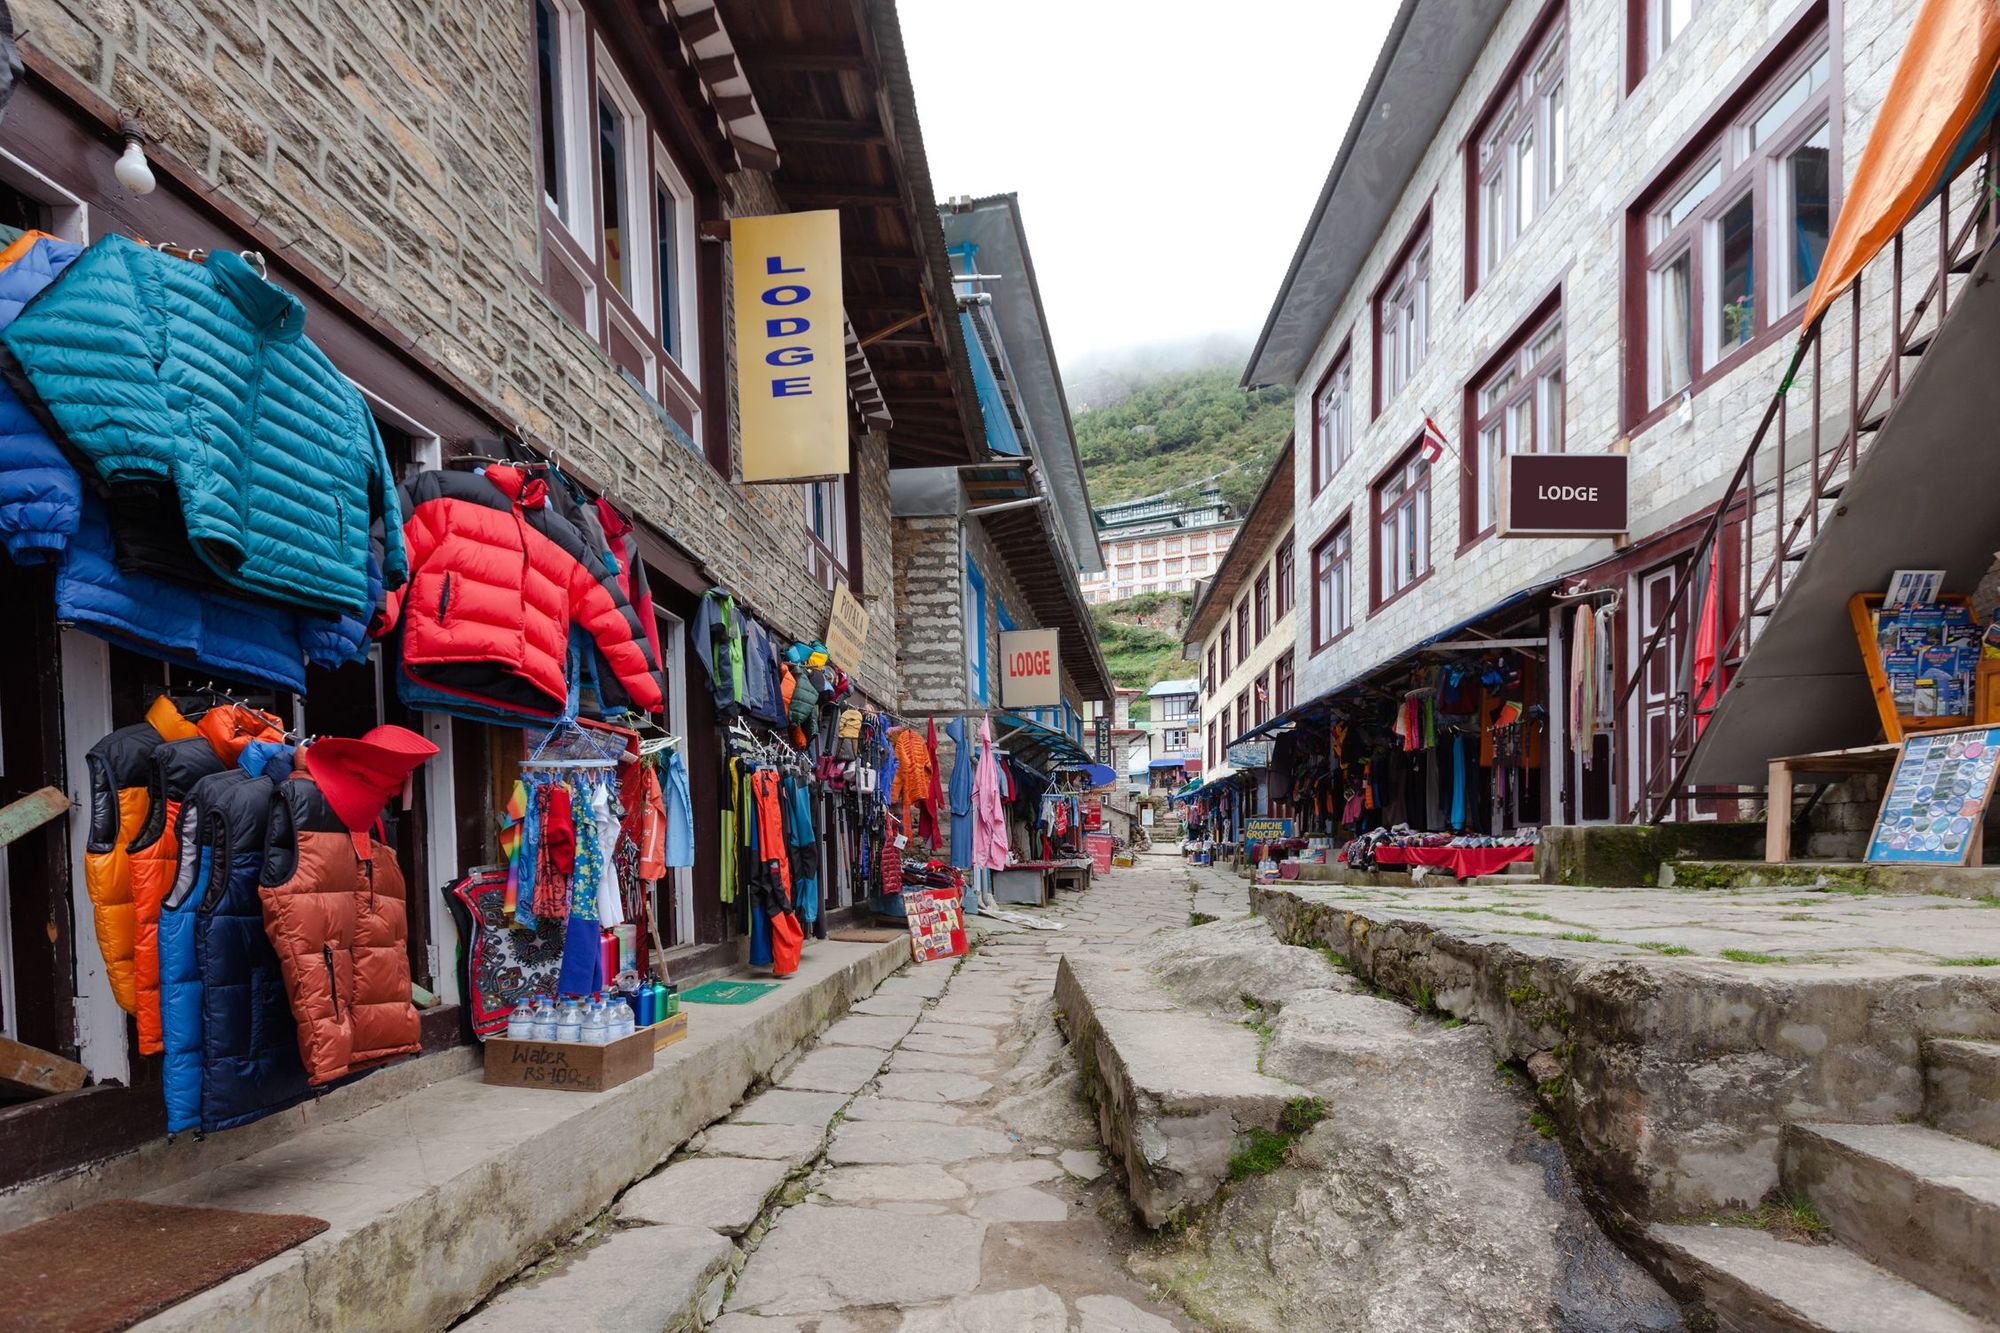 A market street in Namche Bazaar in the Khumbu region of Nepal